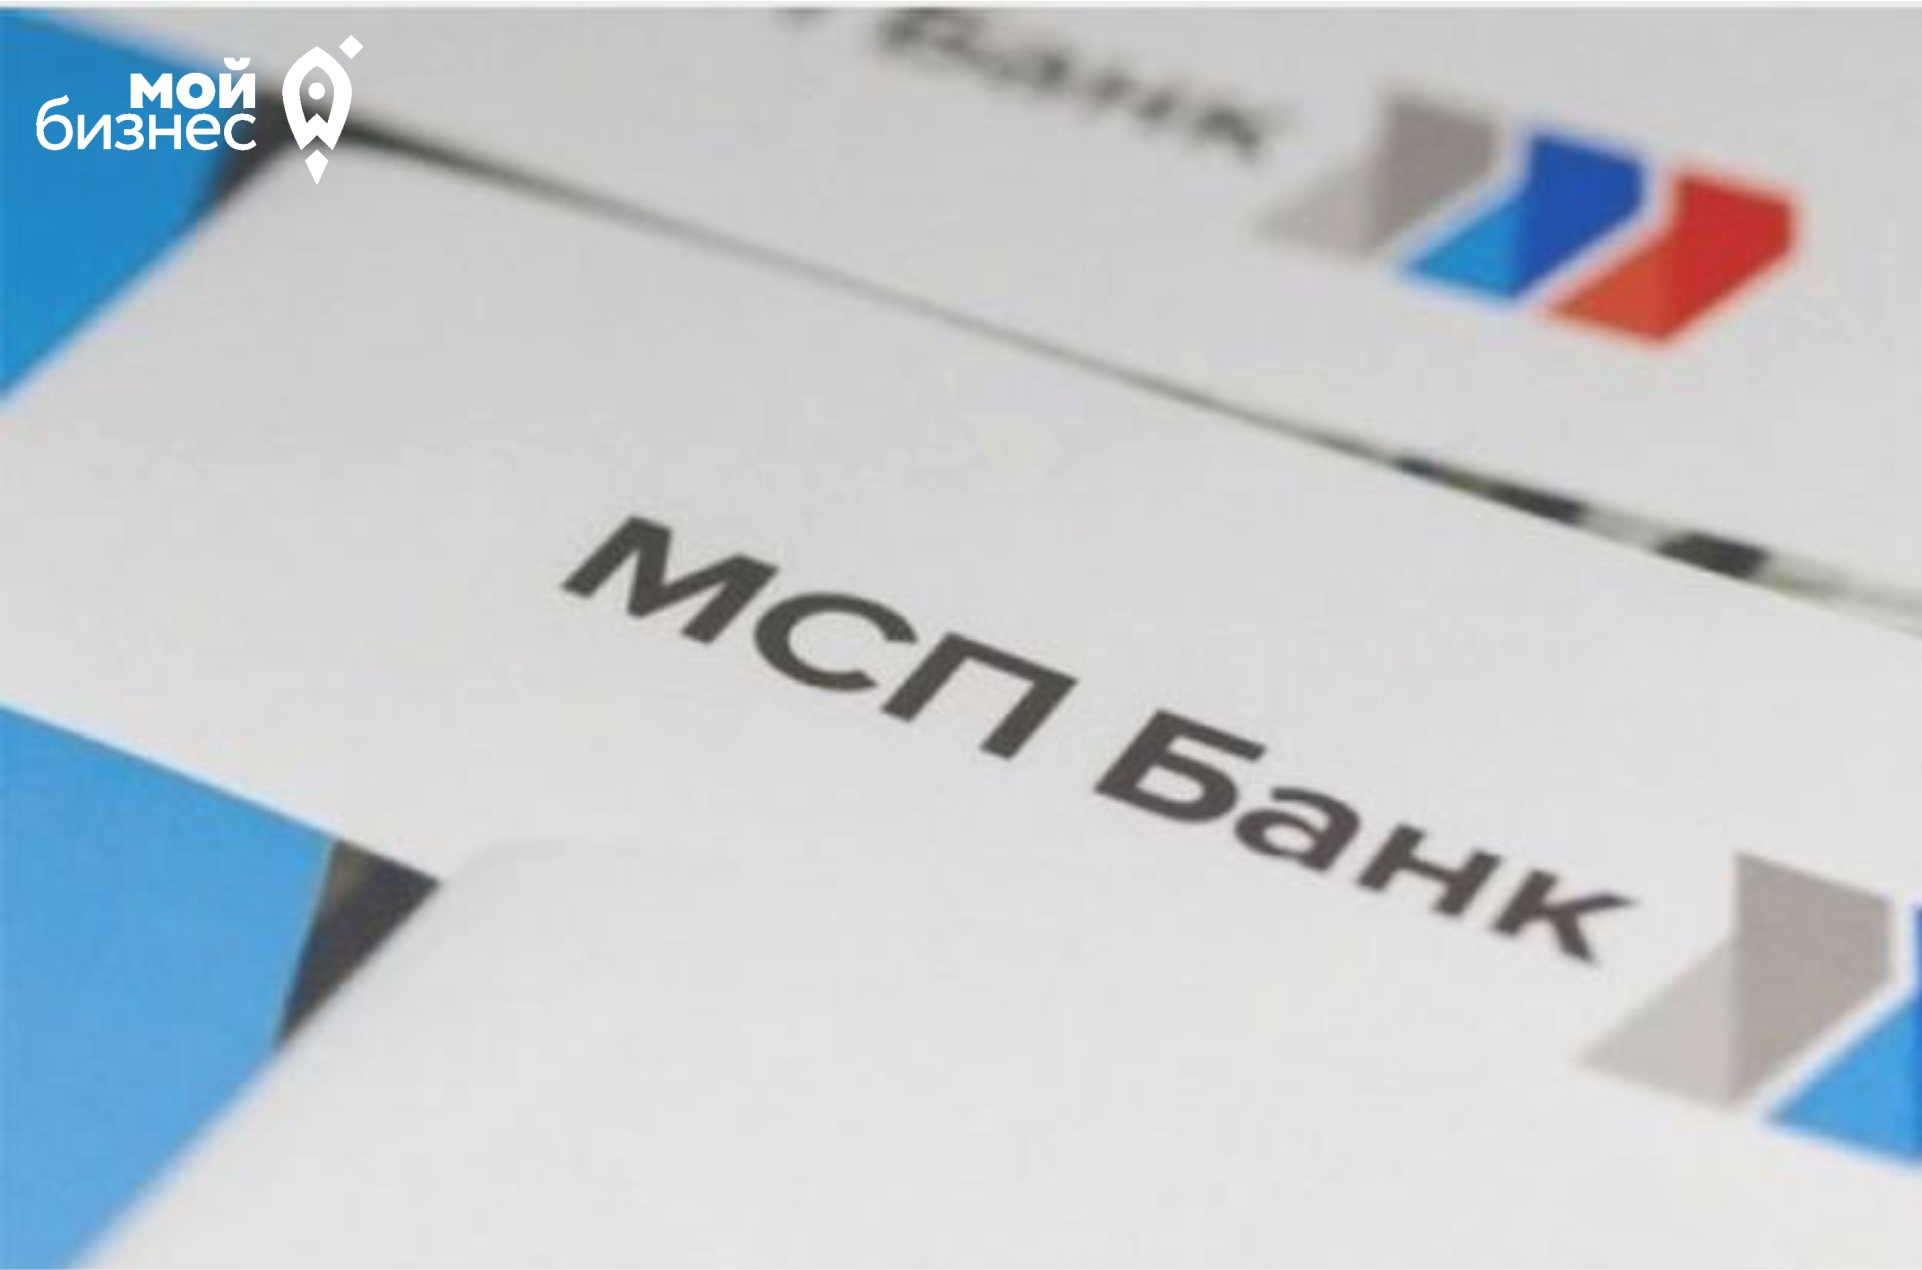 «МСП Банк» начал кредитование малого и среднего бизнеса по новым программам